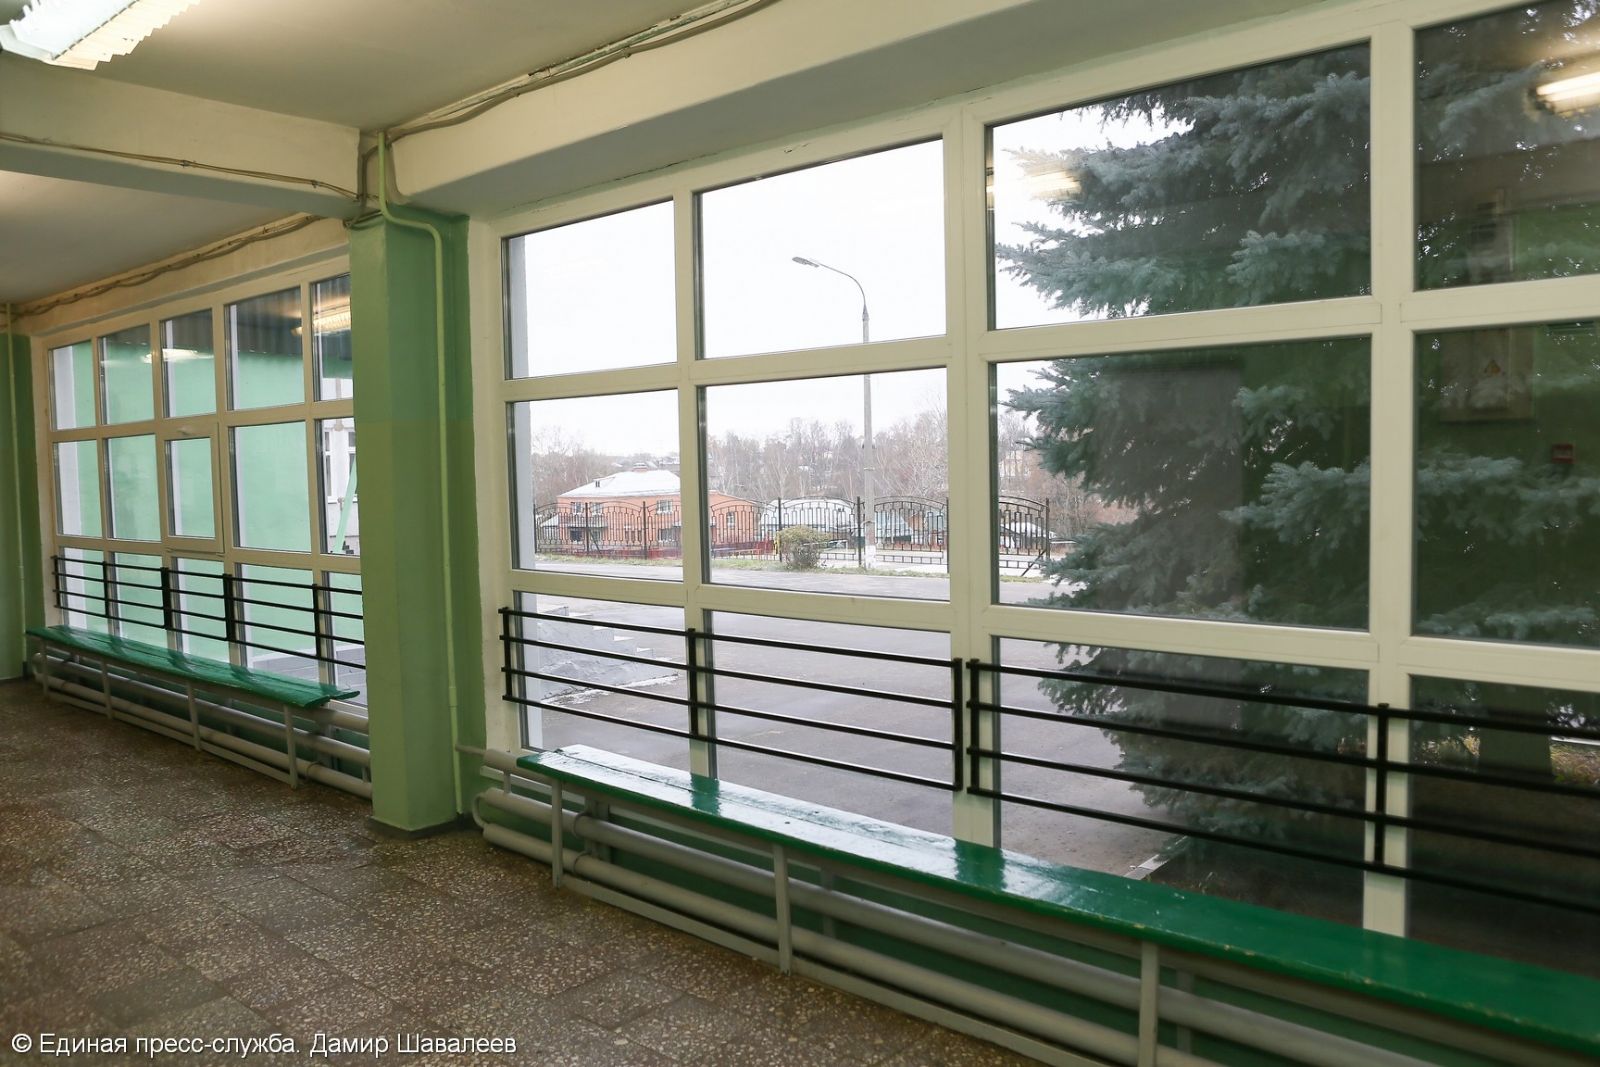 Новые окна в районных школах появятся благодаря бюджетной экономии